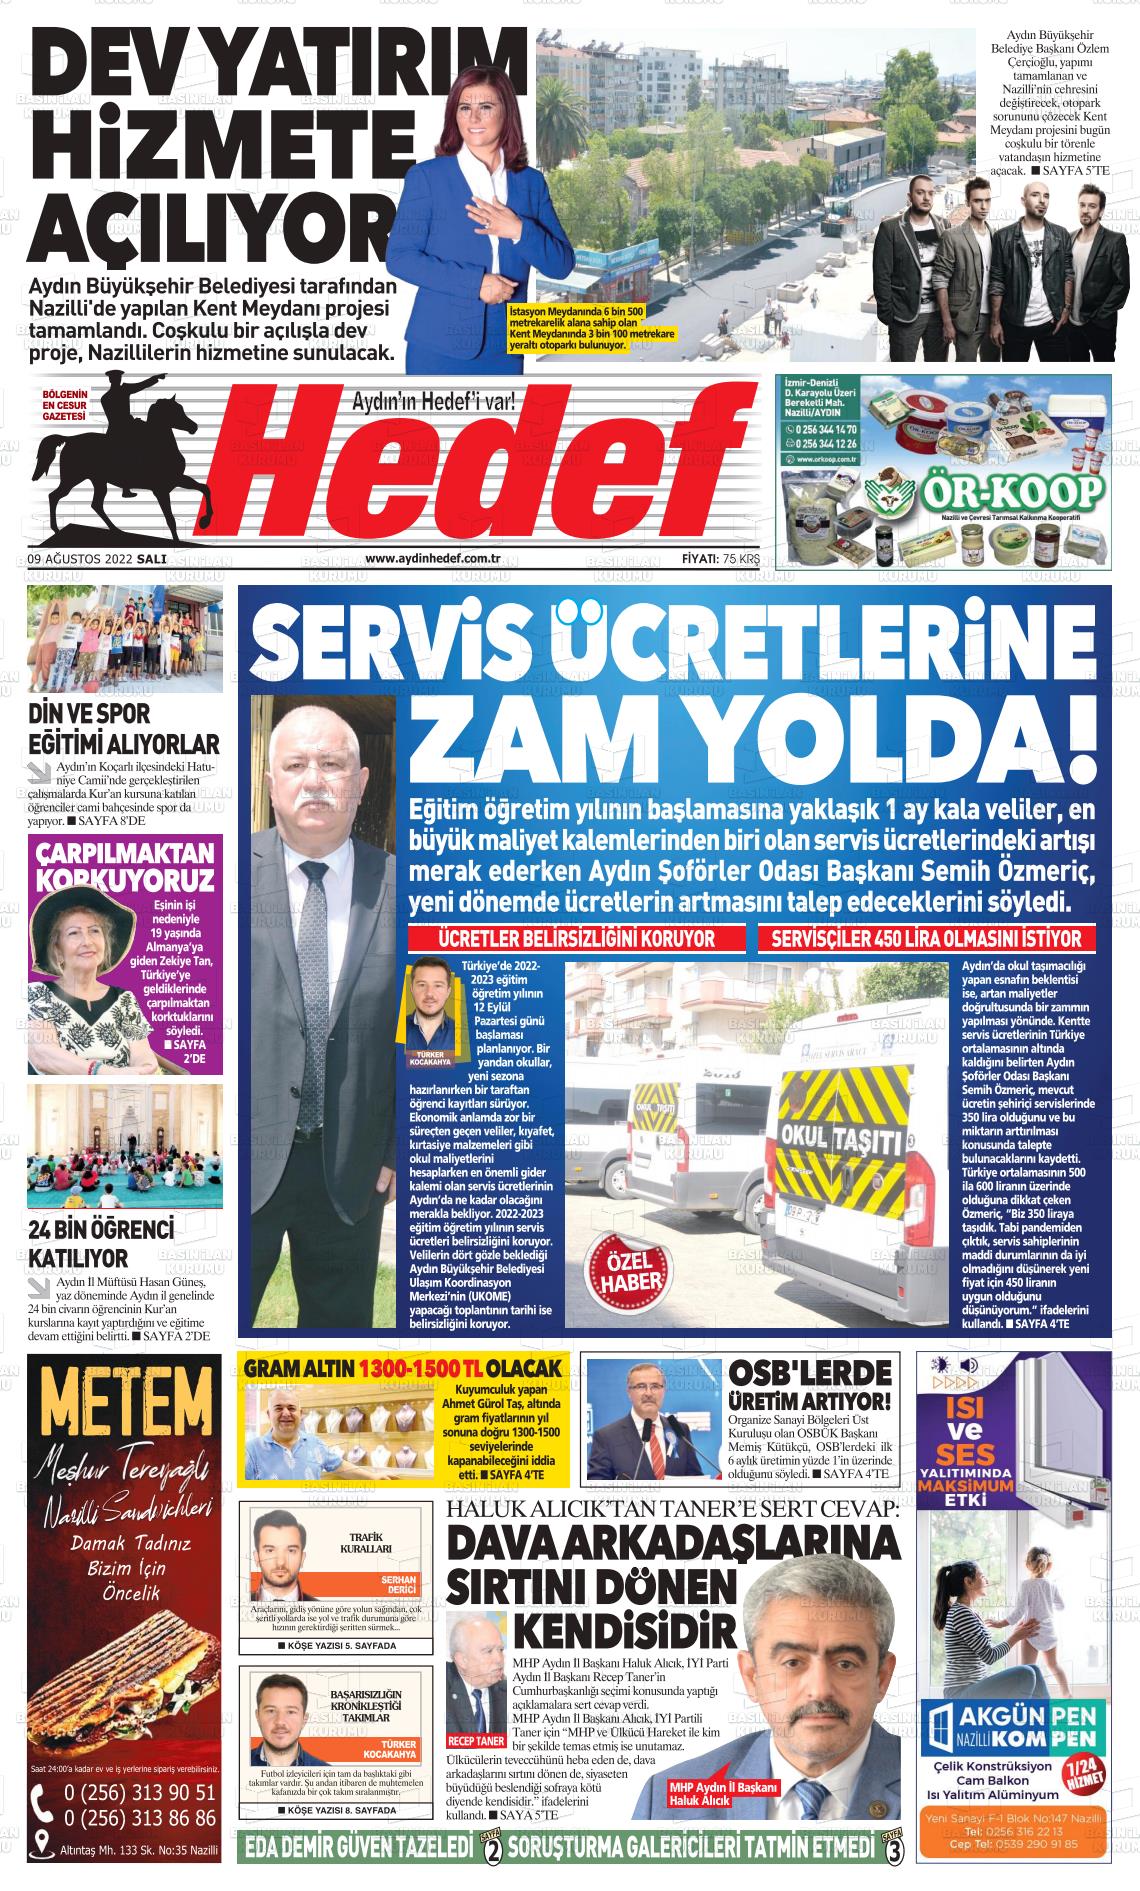 09 Ağustos 2022 Aydın Hedef Gazete Manşeti